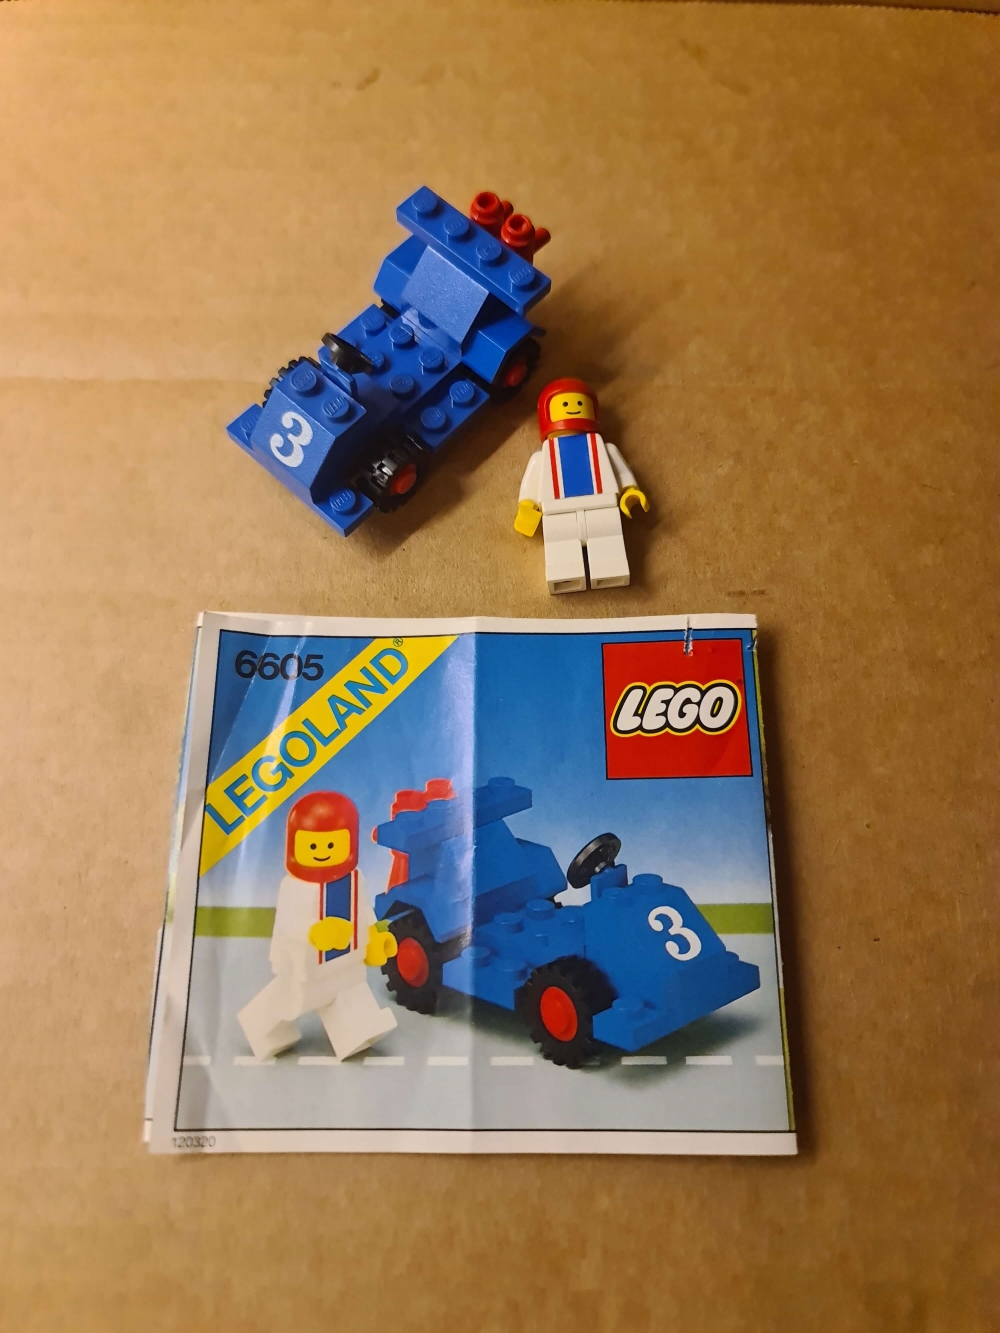 Sett 6605 fra Lego Classic Town serien.
Meget pent sett. Komplett med manual (delt i to).